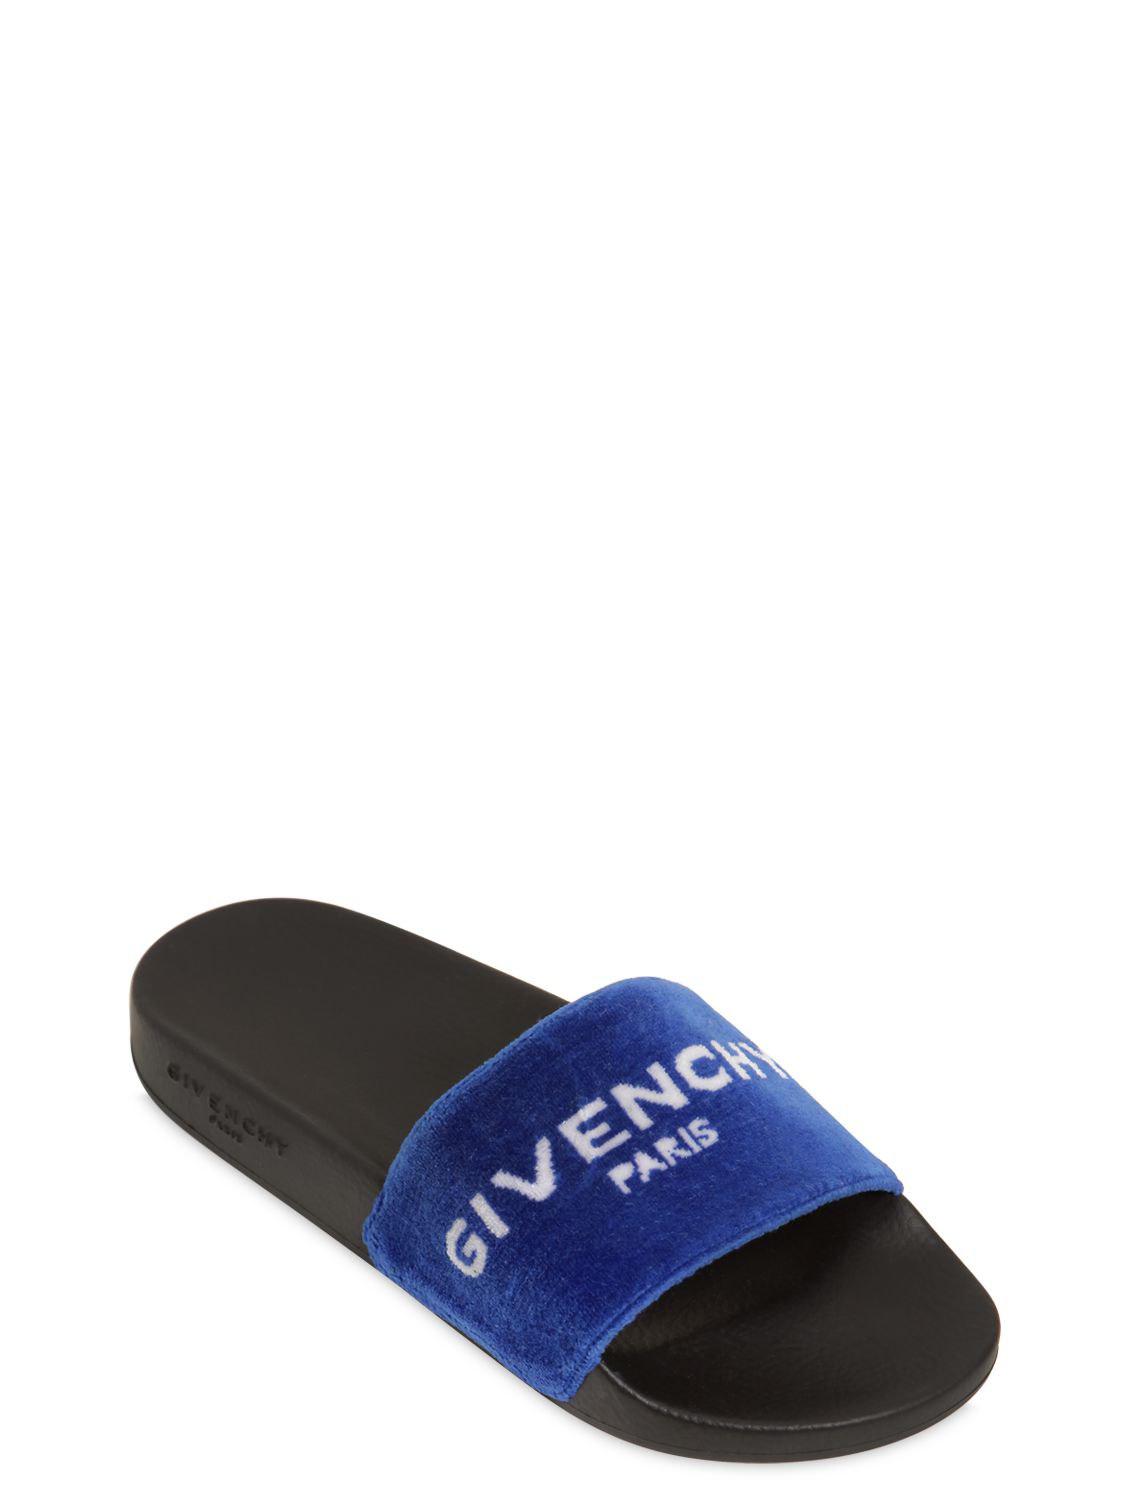 givenchy slides blue velvet